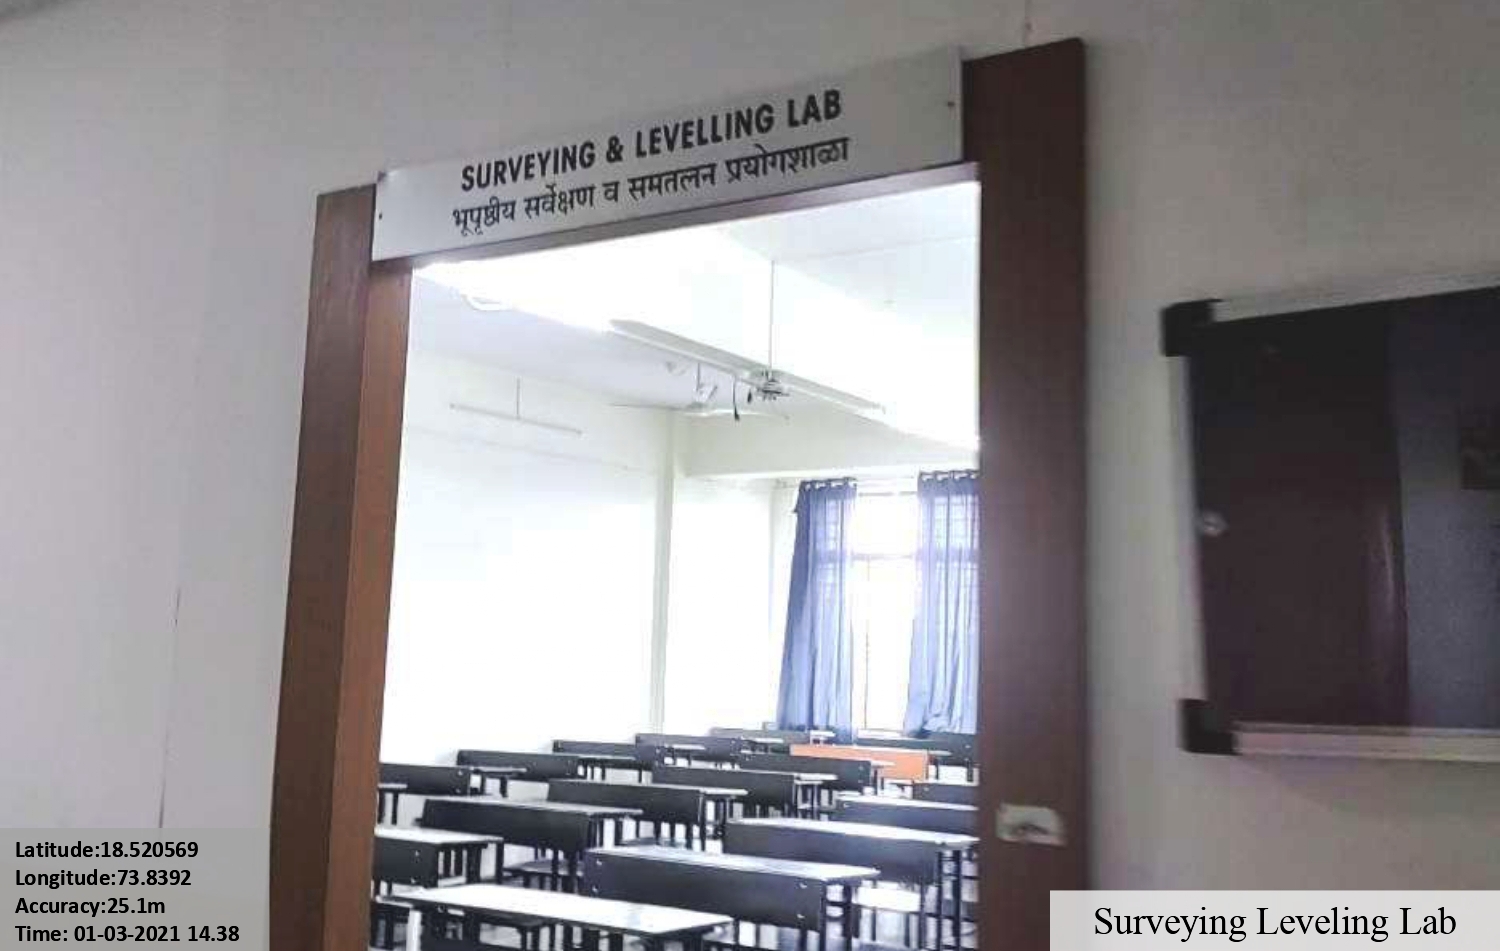 Surveying Leveling Lab